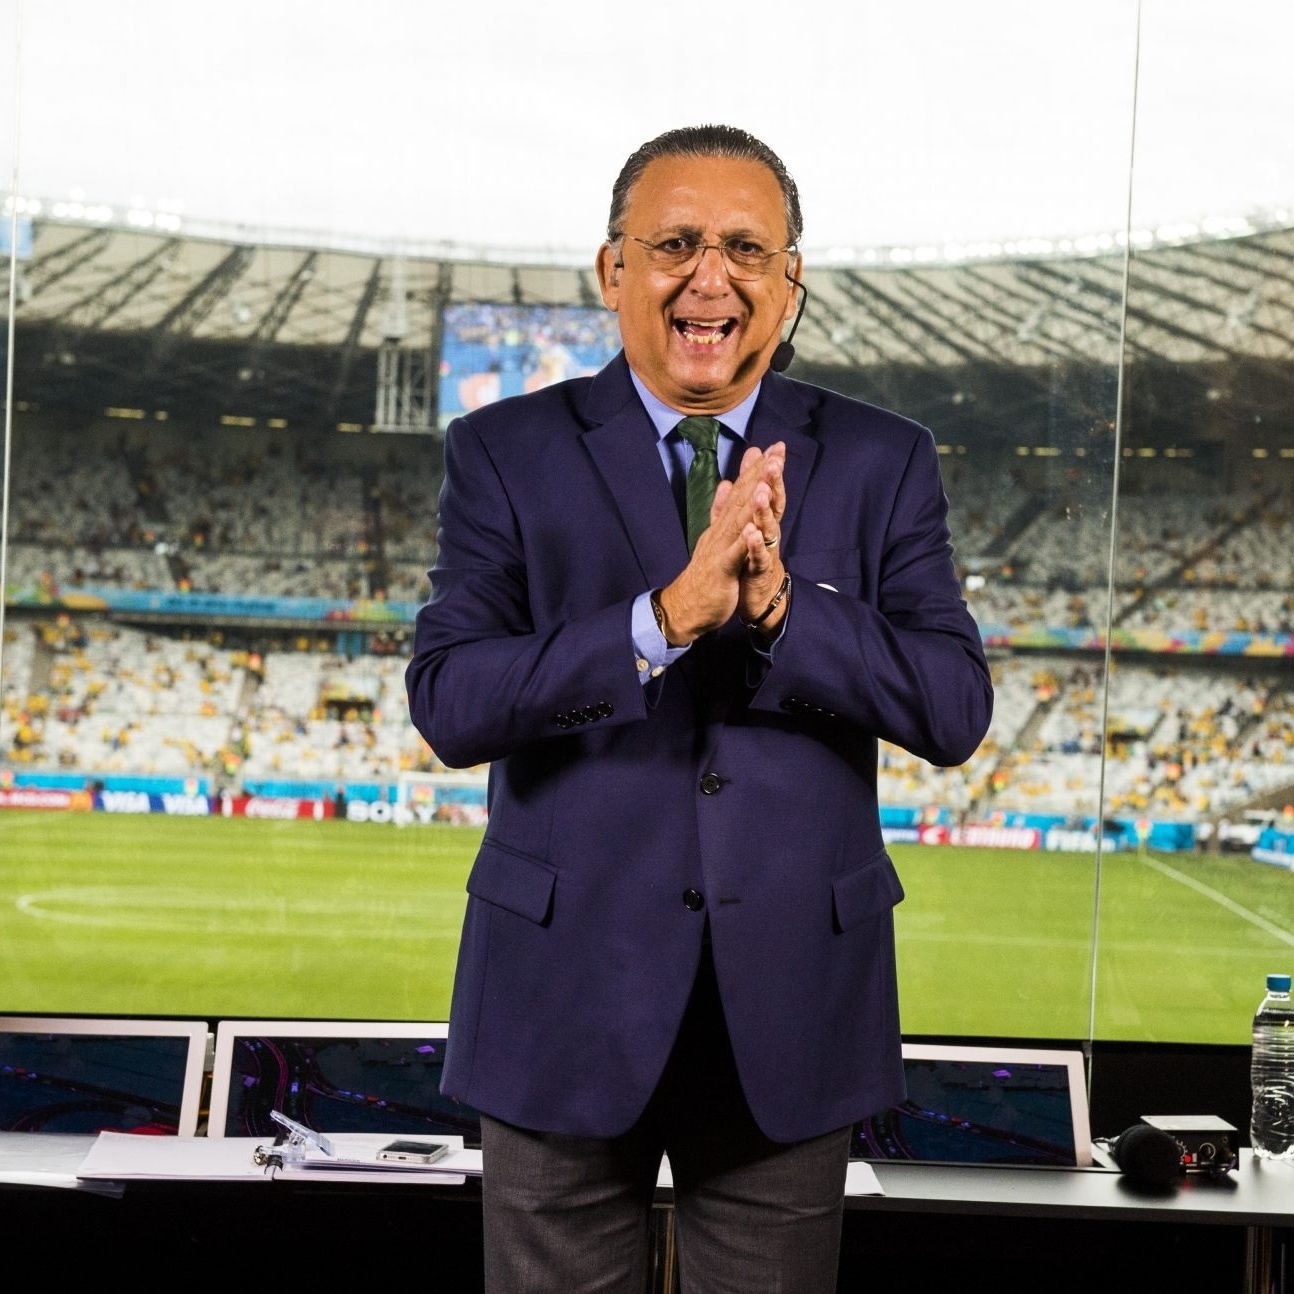 Copa do Mundo: Globo tem prejuízo com transmissão de jogos